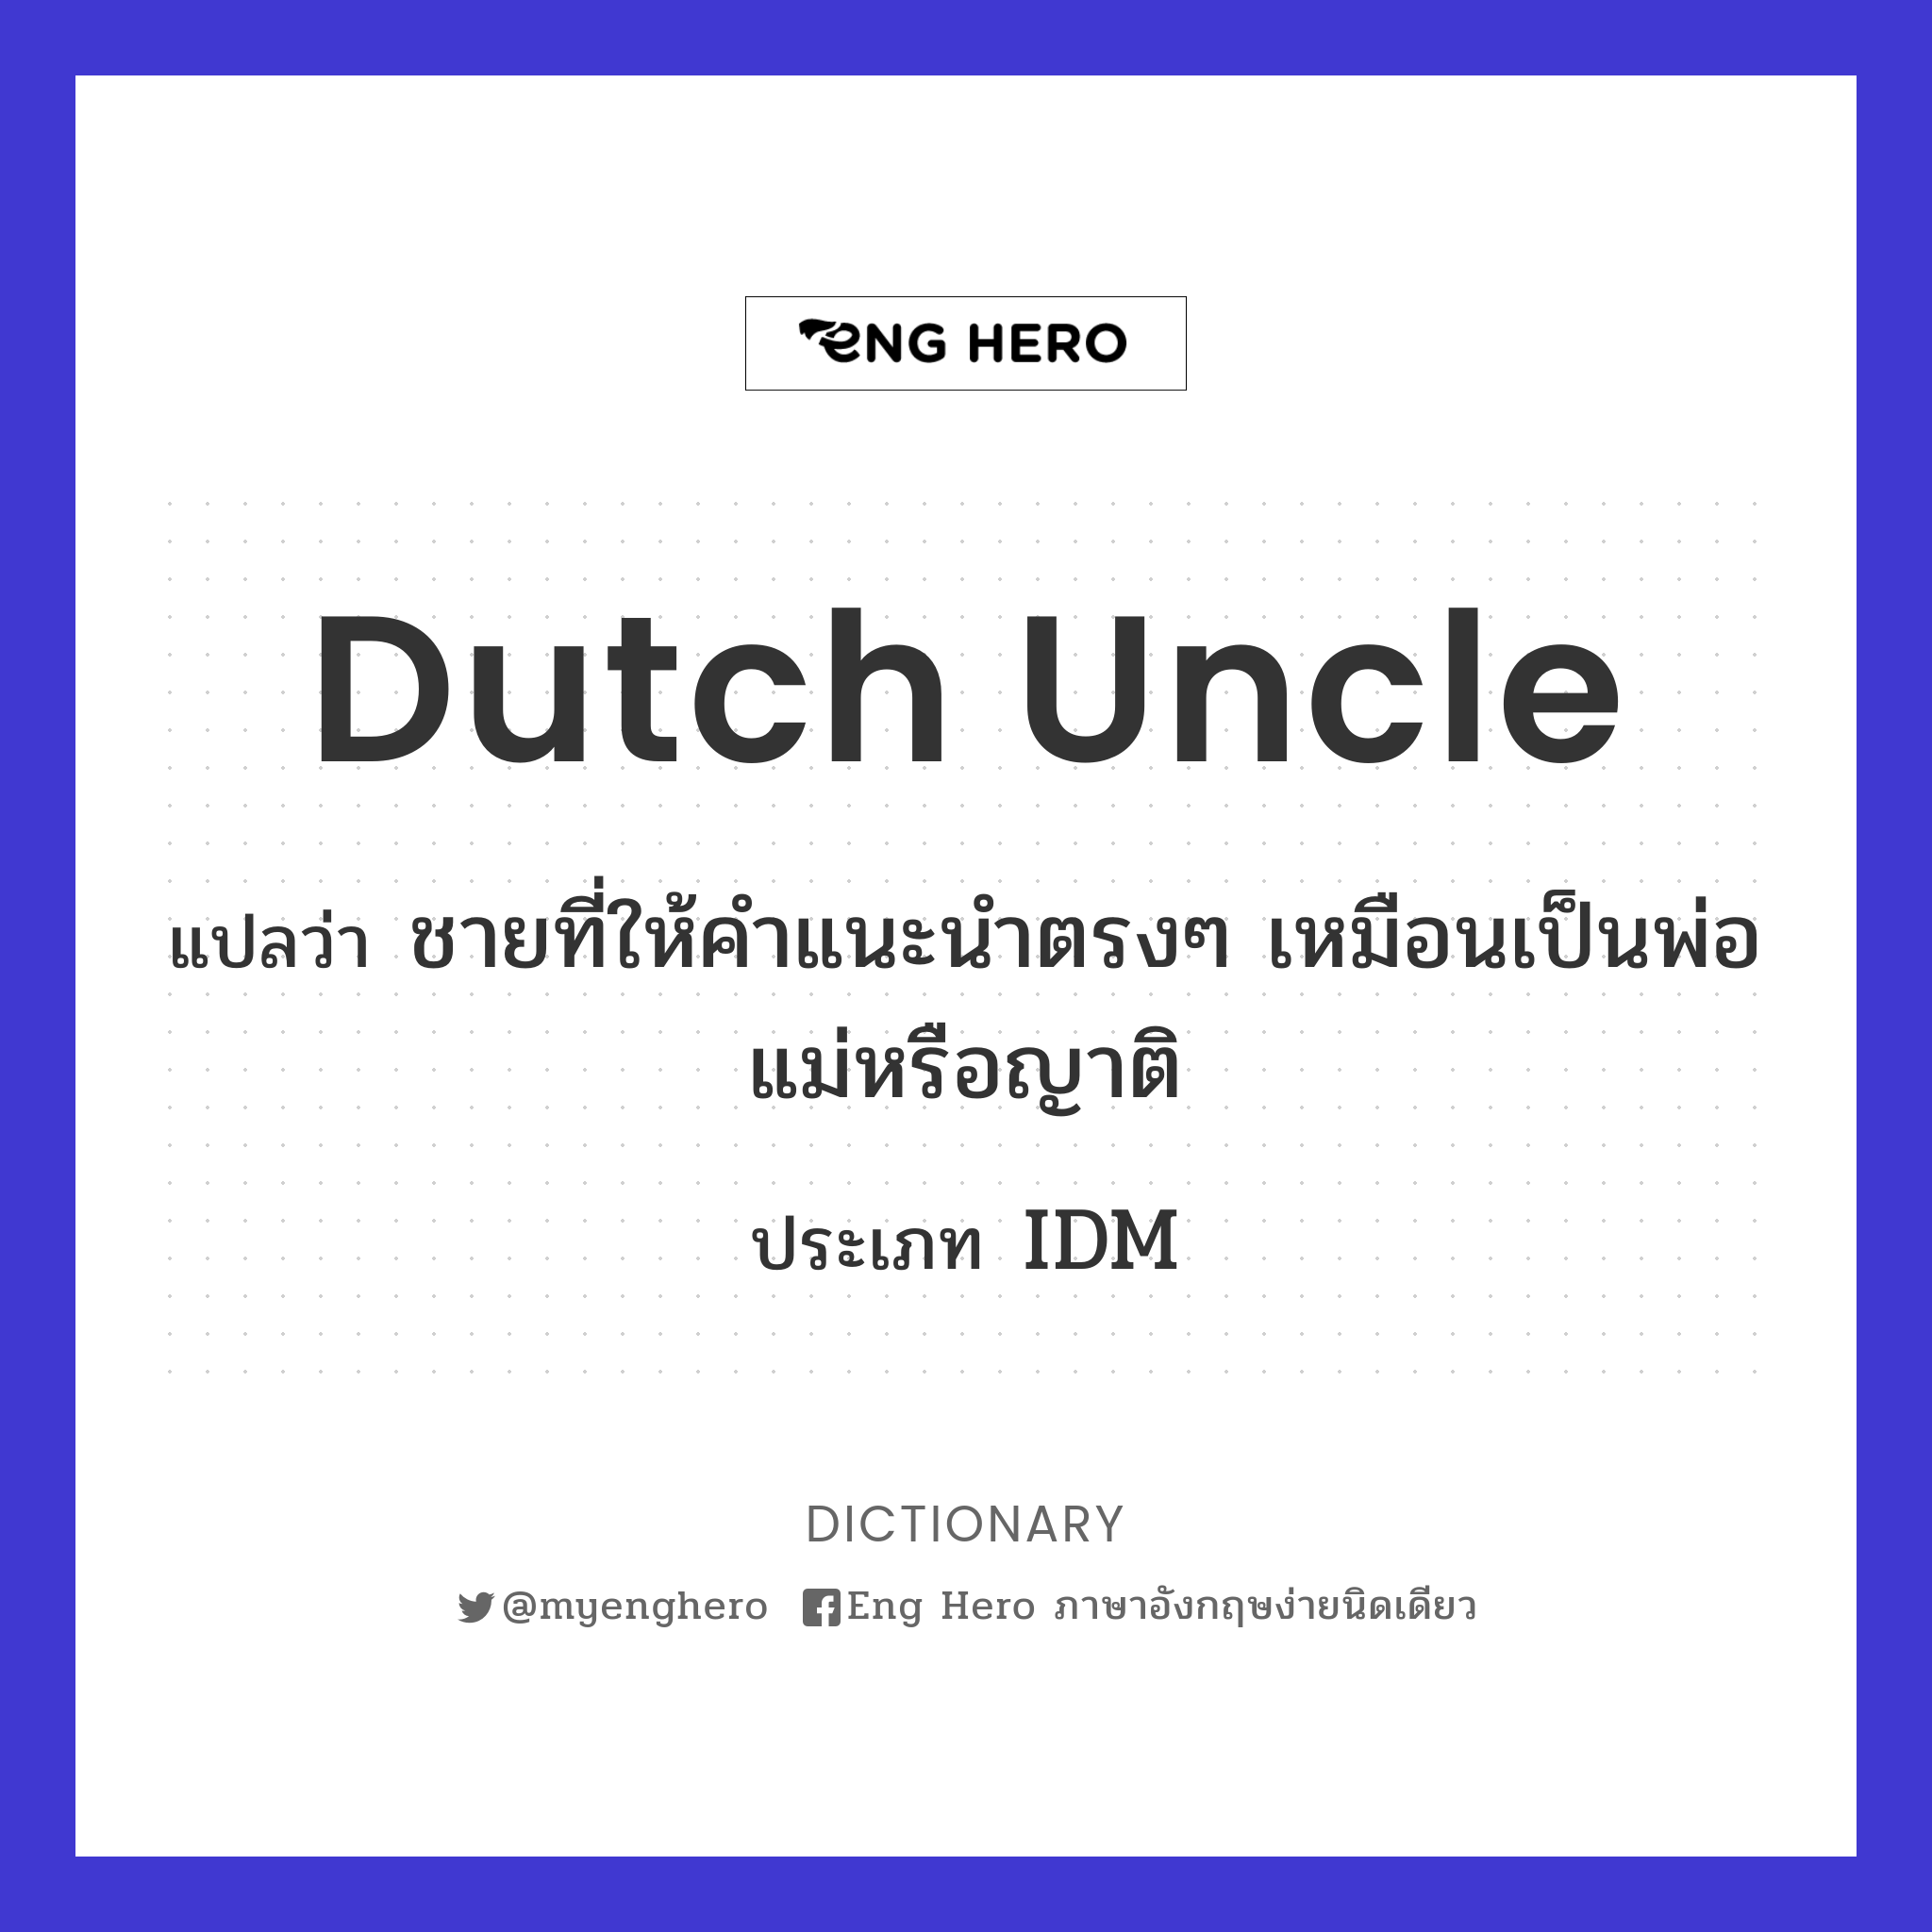 Dutch uncle